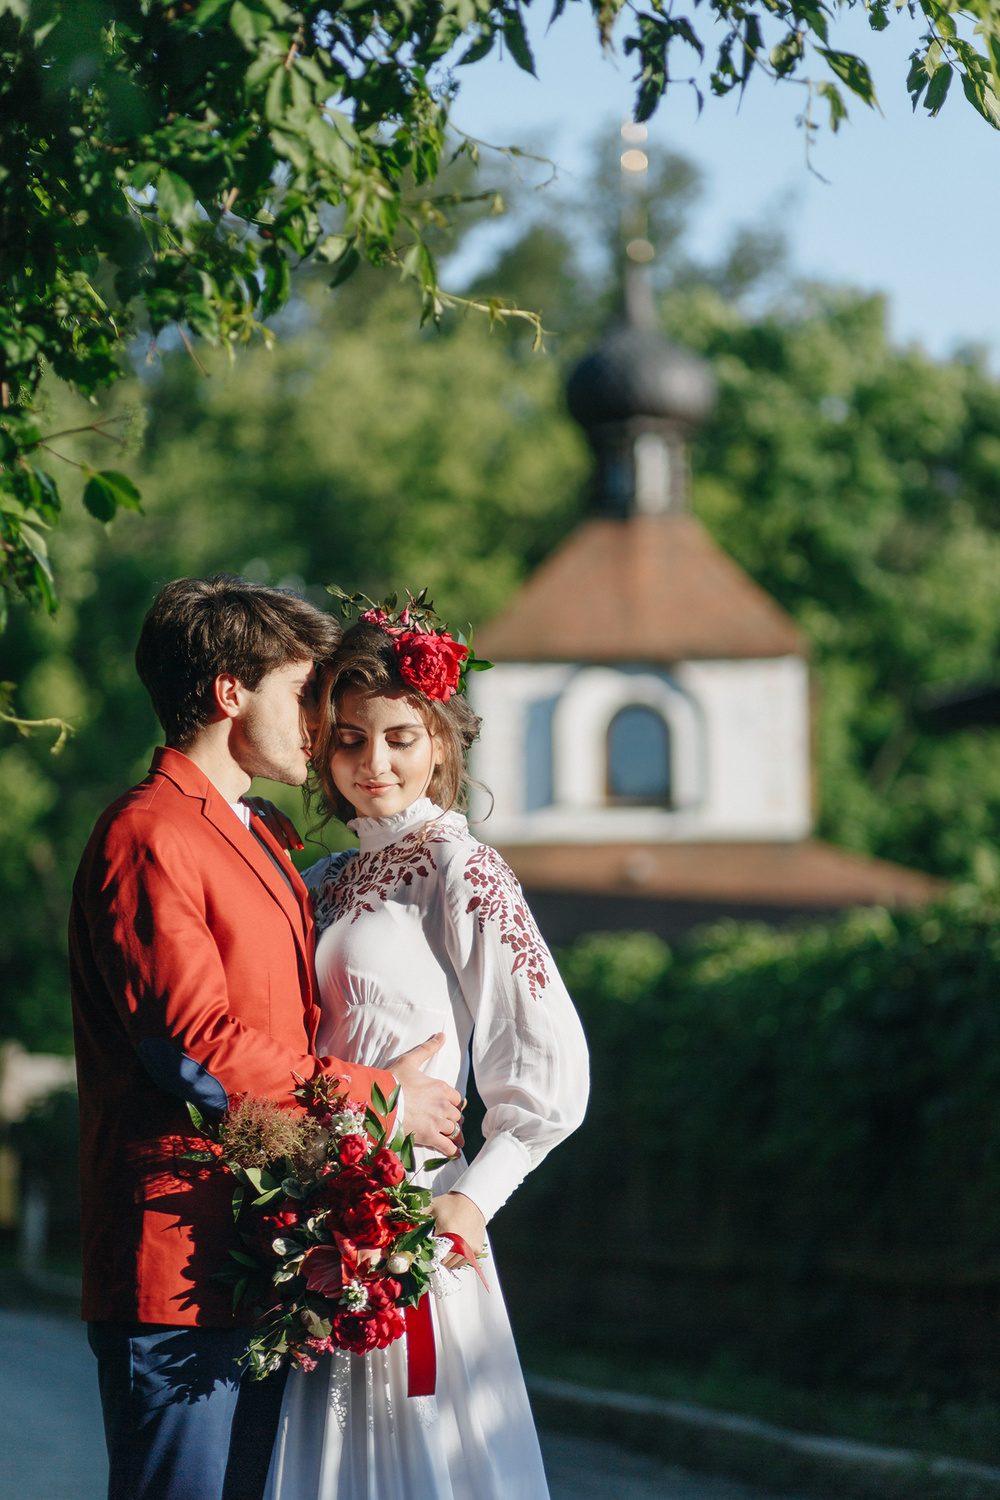 WINE SHADES OF UKRAINIAN WEDDING